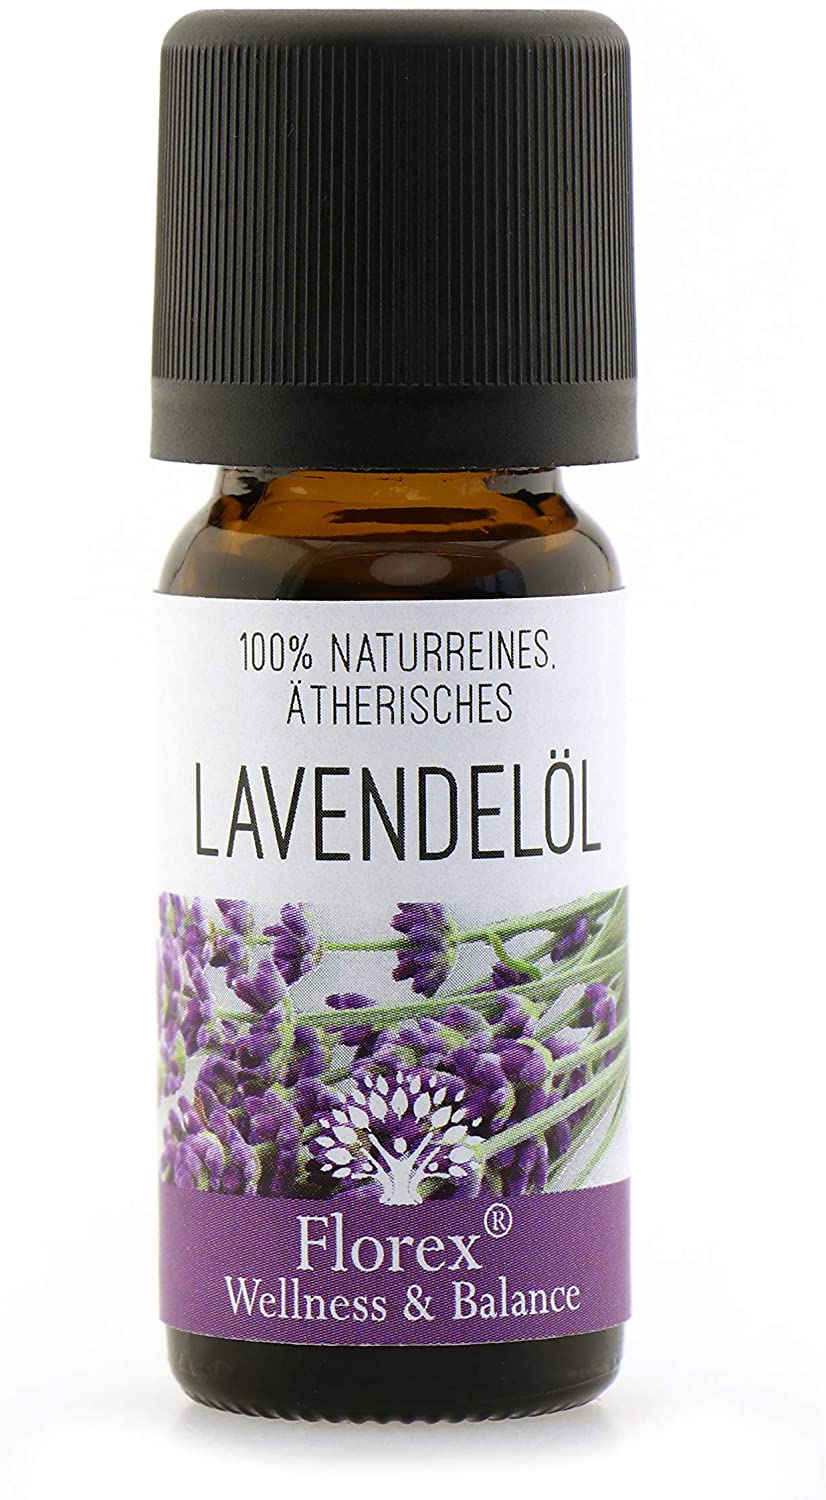 Florex 100% naturreines Ätherisches Öl Lavendelöl 10ml  9652LA-10